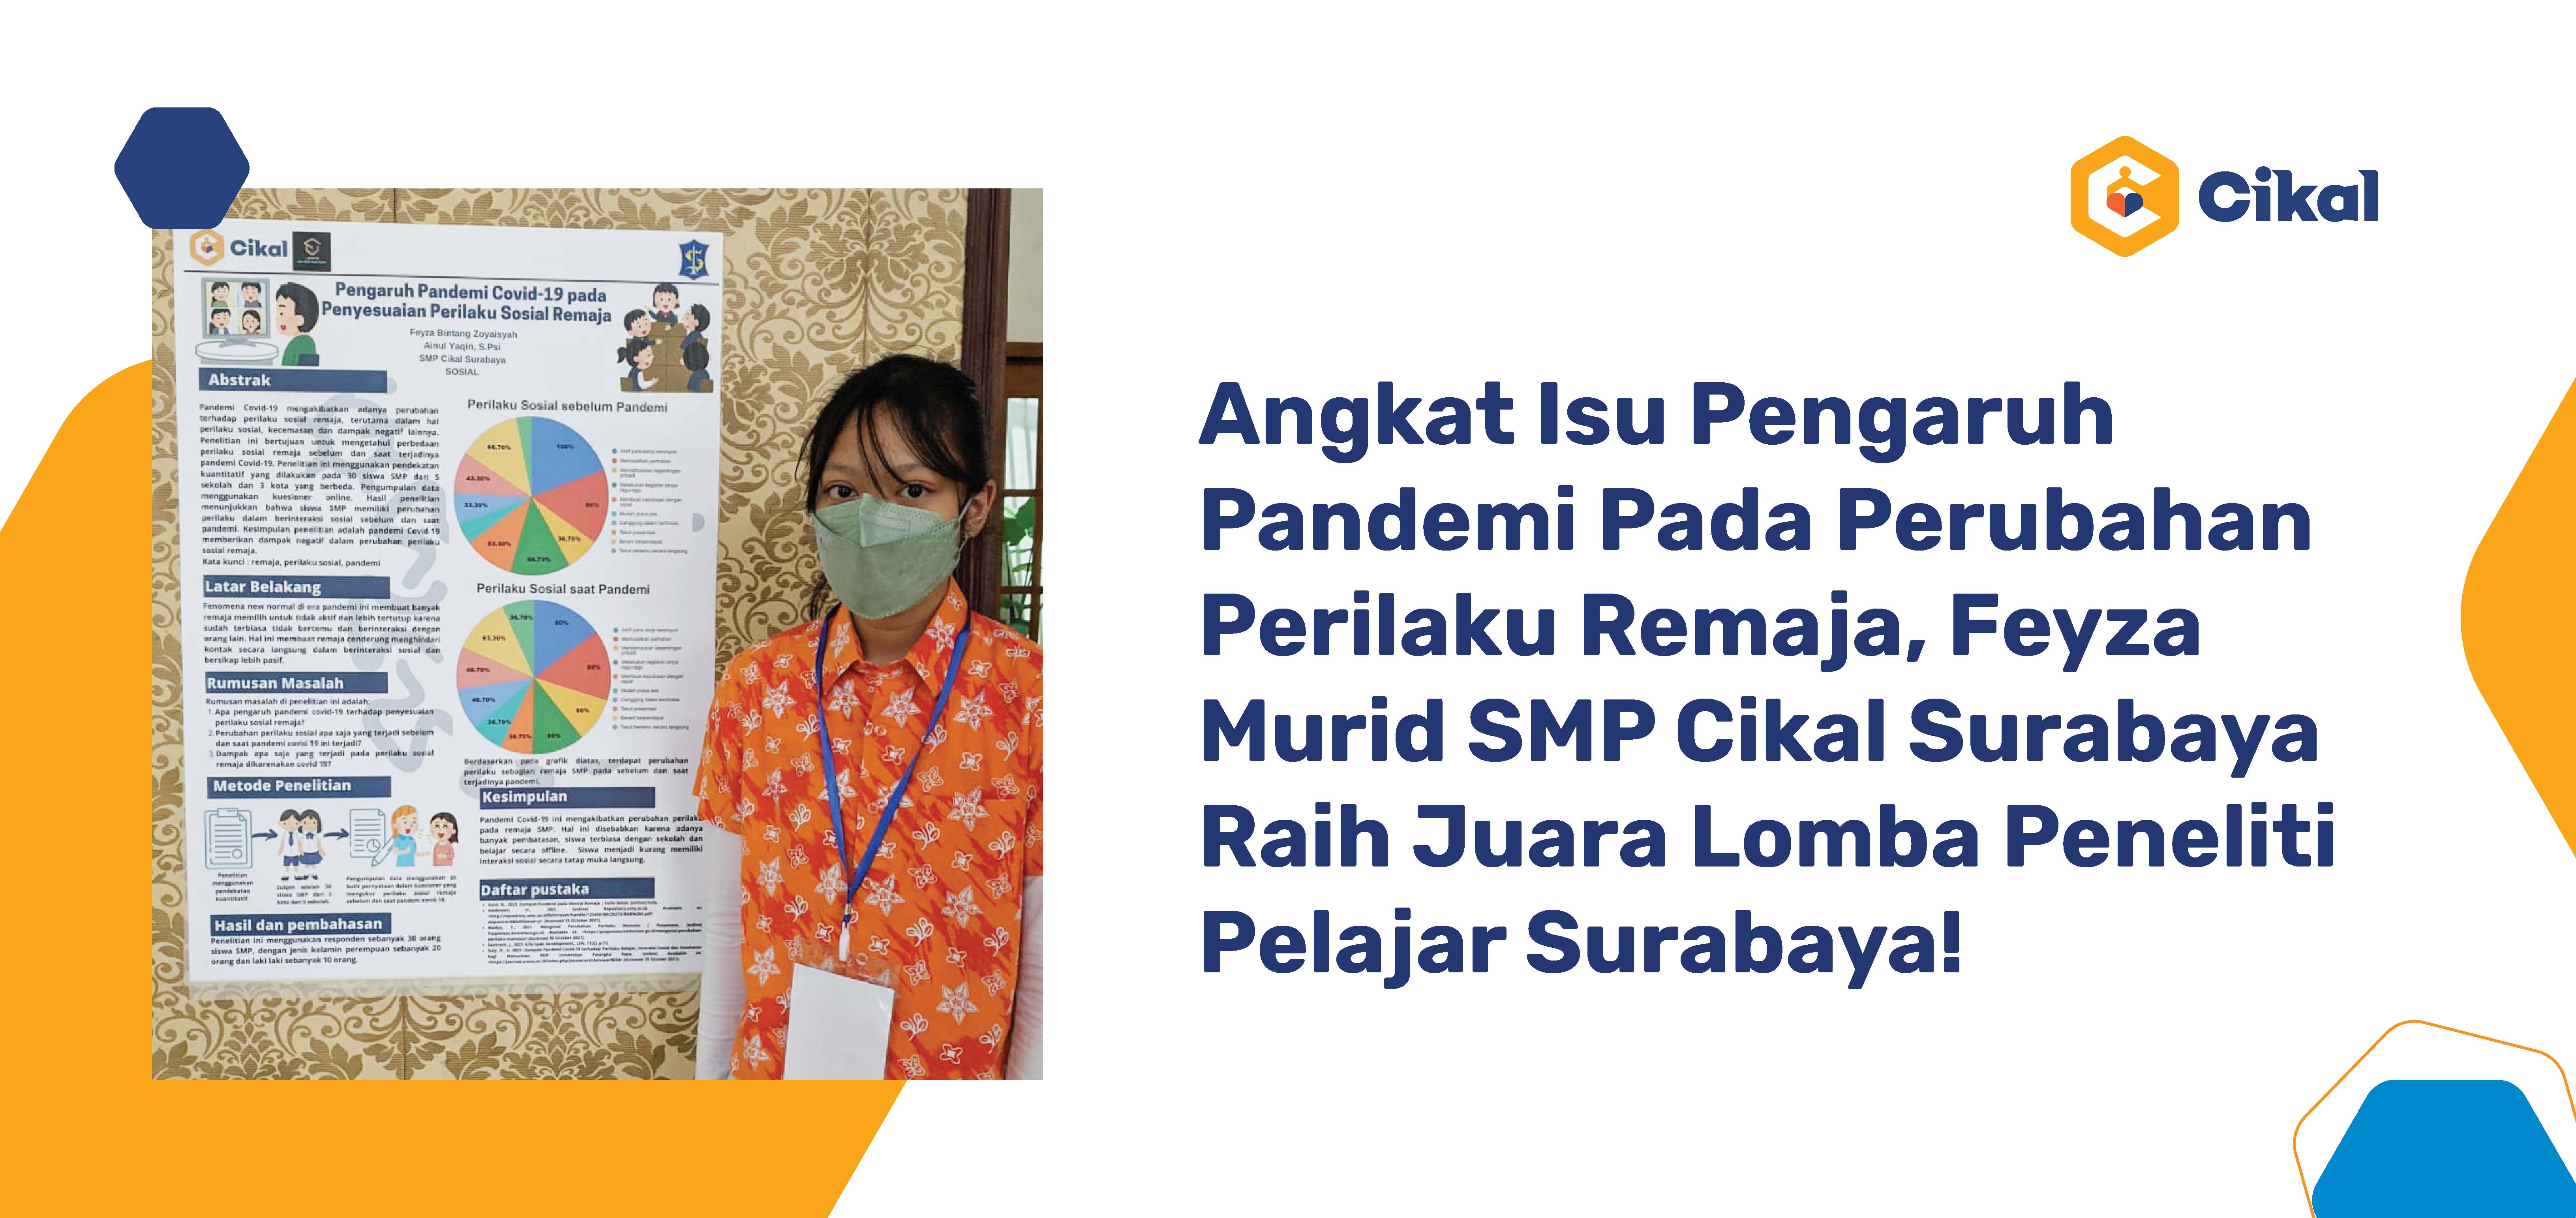 Angkat Isu Pengaruh Pandemi Pada Perubahan Perilaku Remaja, Feyza Murid SMP Cikal Surabaya Raih Juara Lomba Peneliti Pelajar Surabaya!